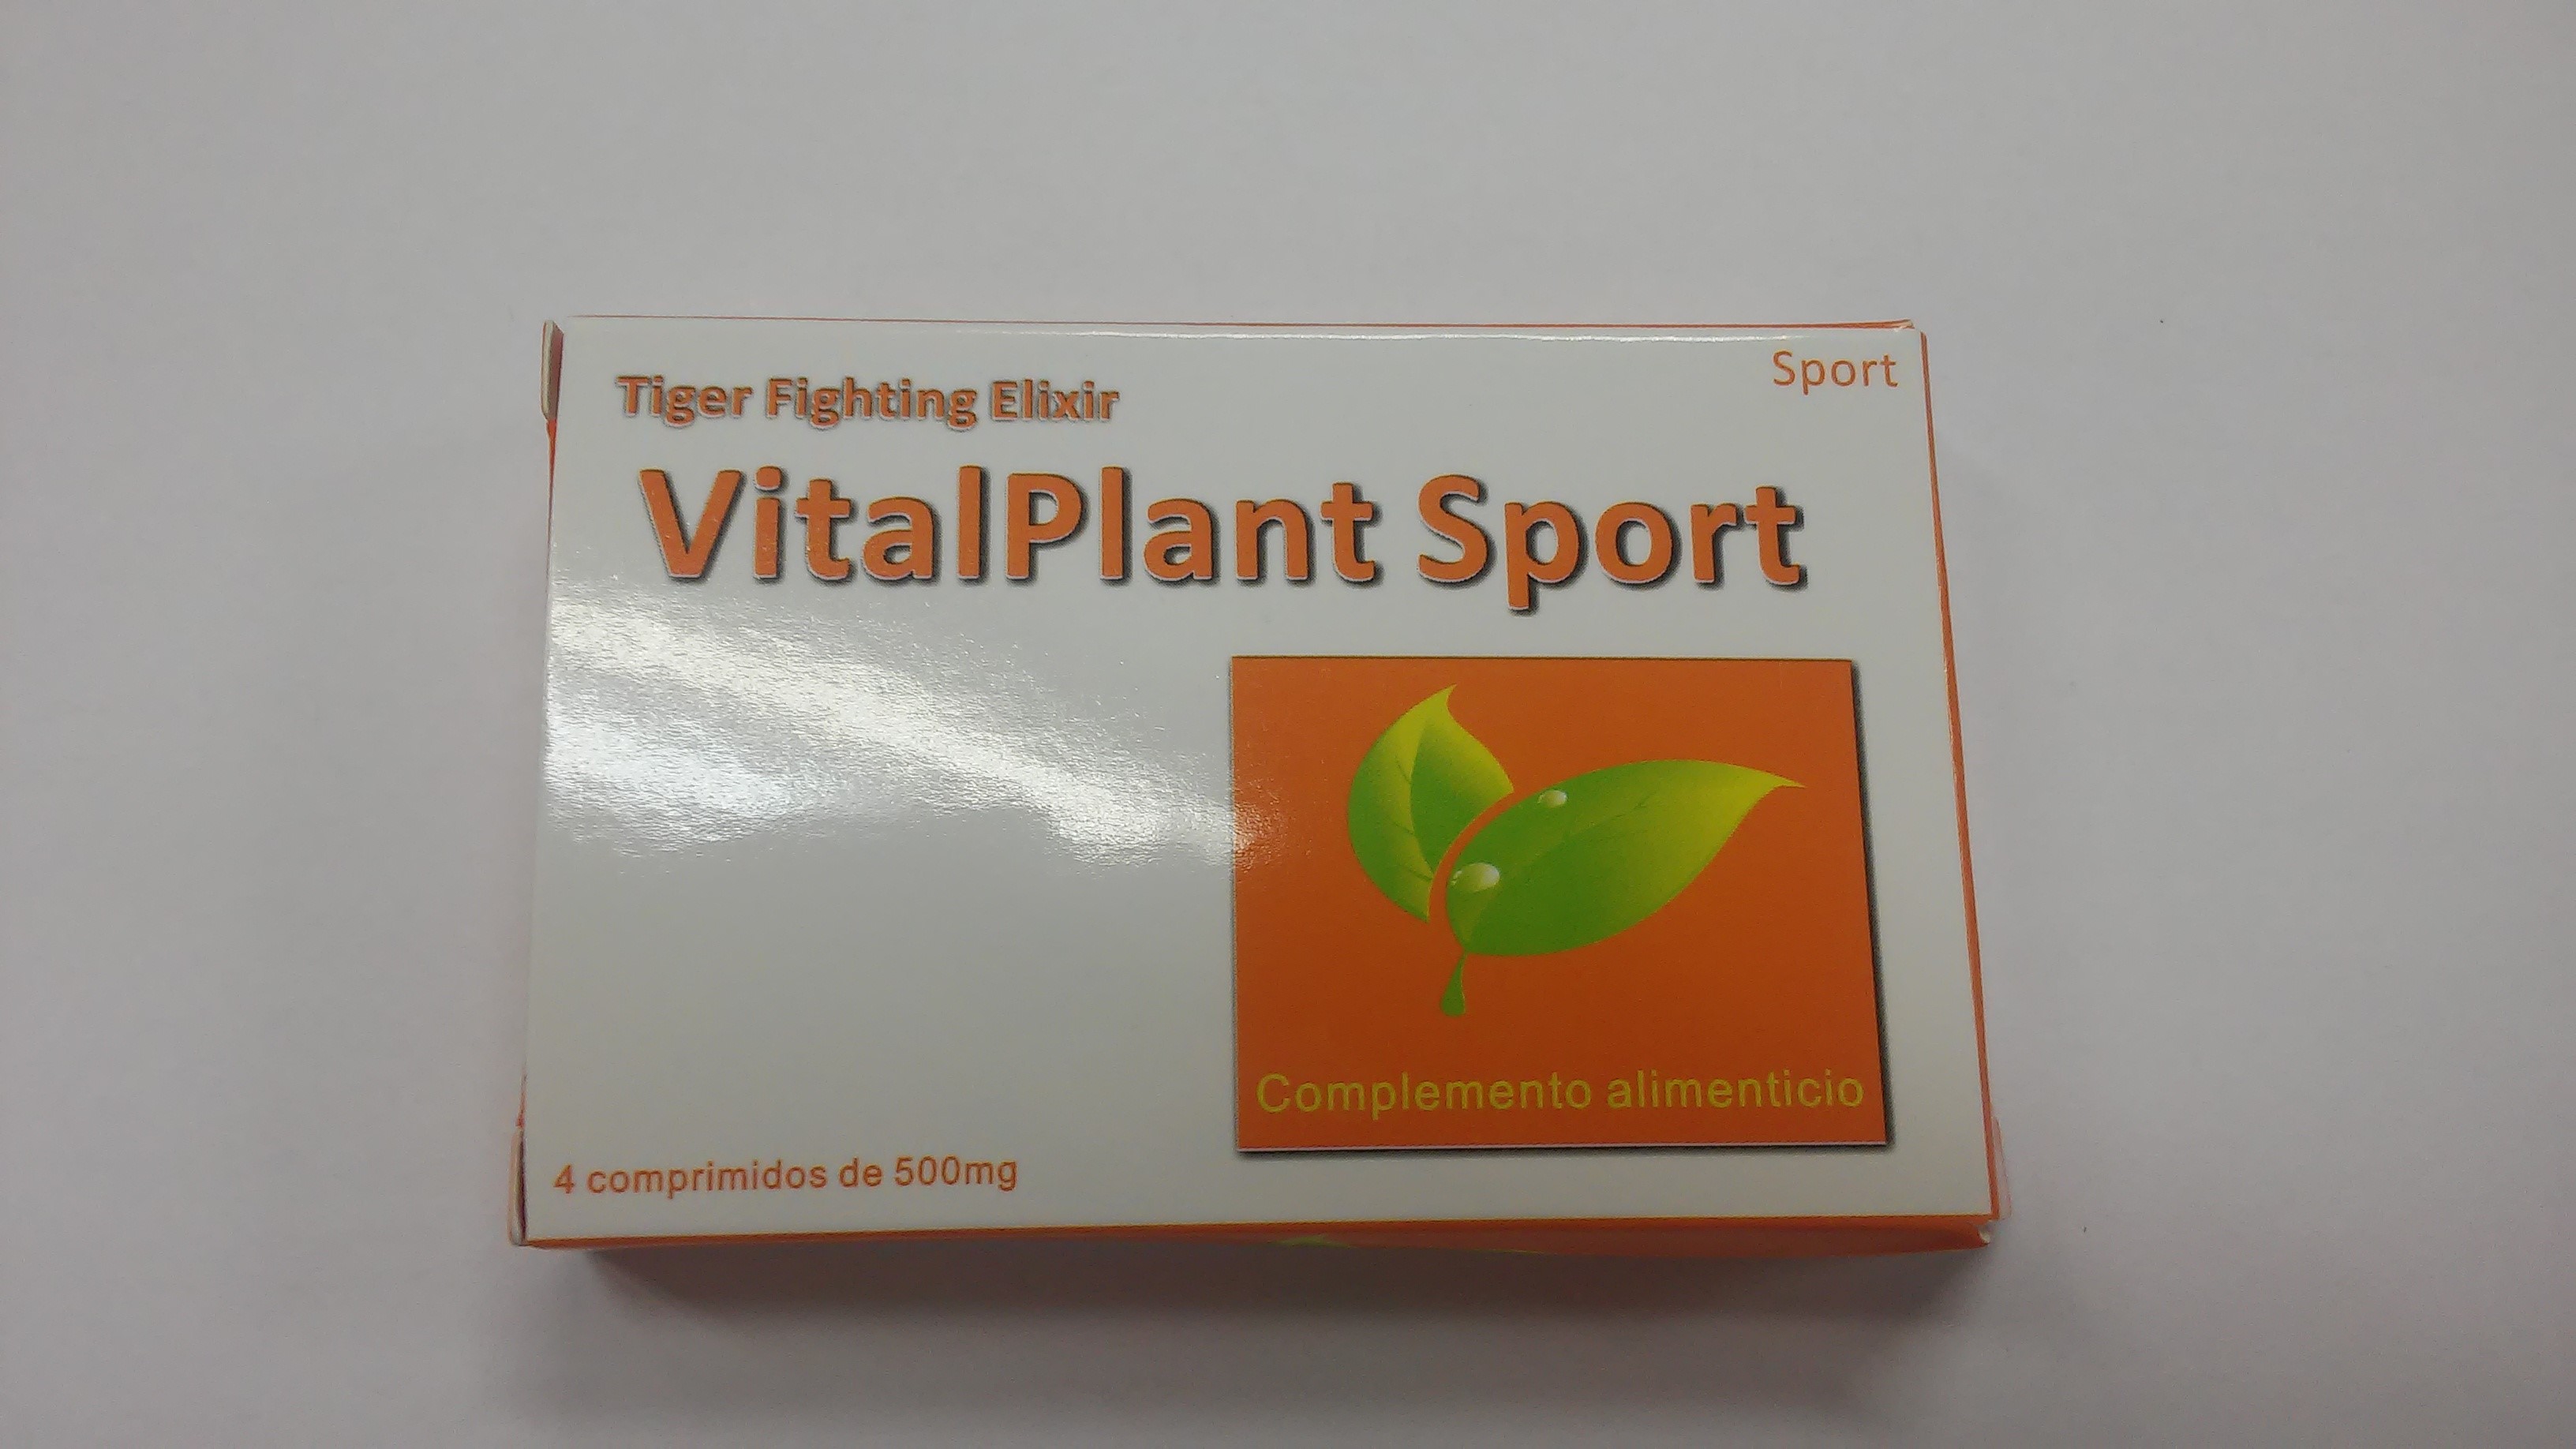 Image of the illigal product: VitalPlant Sport